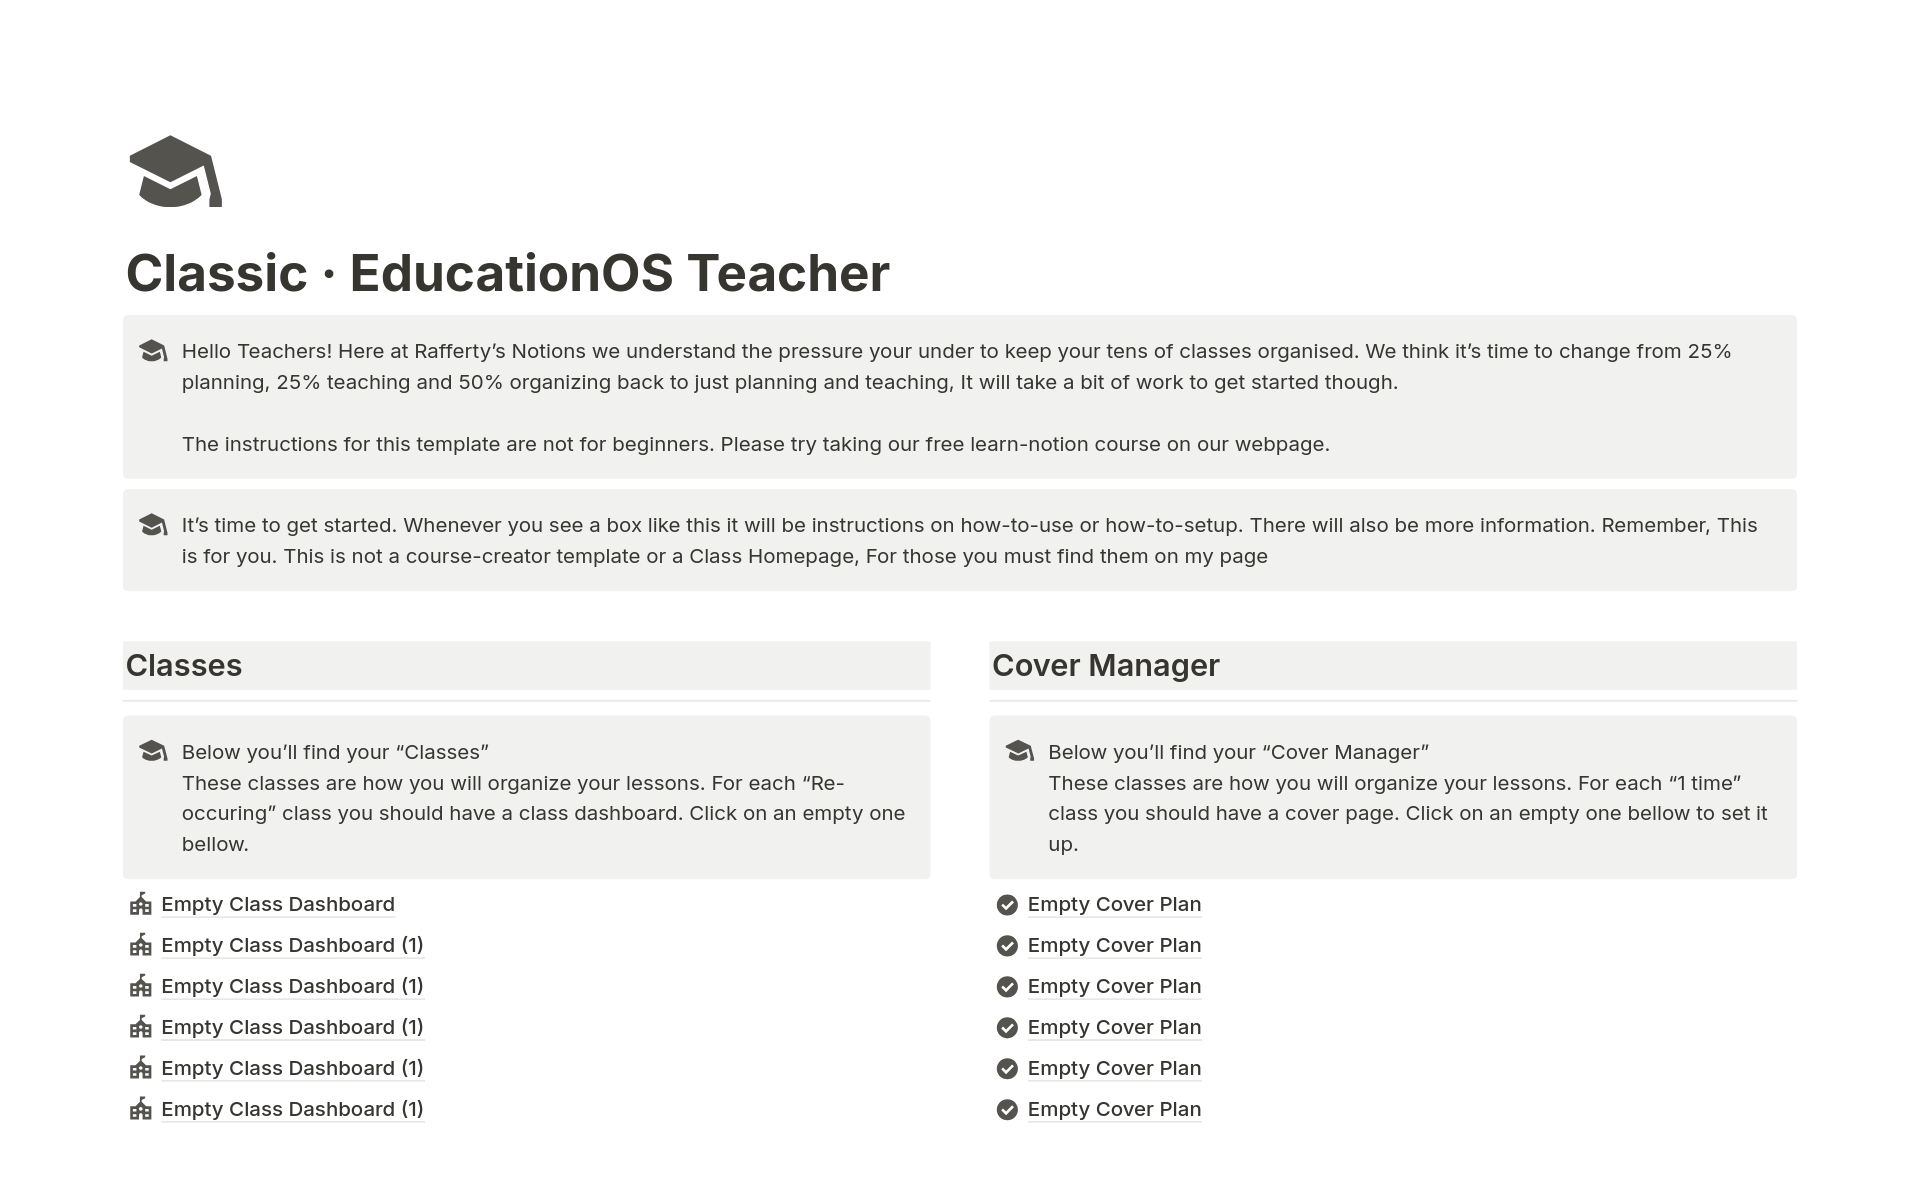 Vista previa de una plantilla para Classic EducationOS Teacher